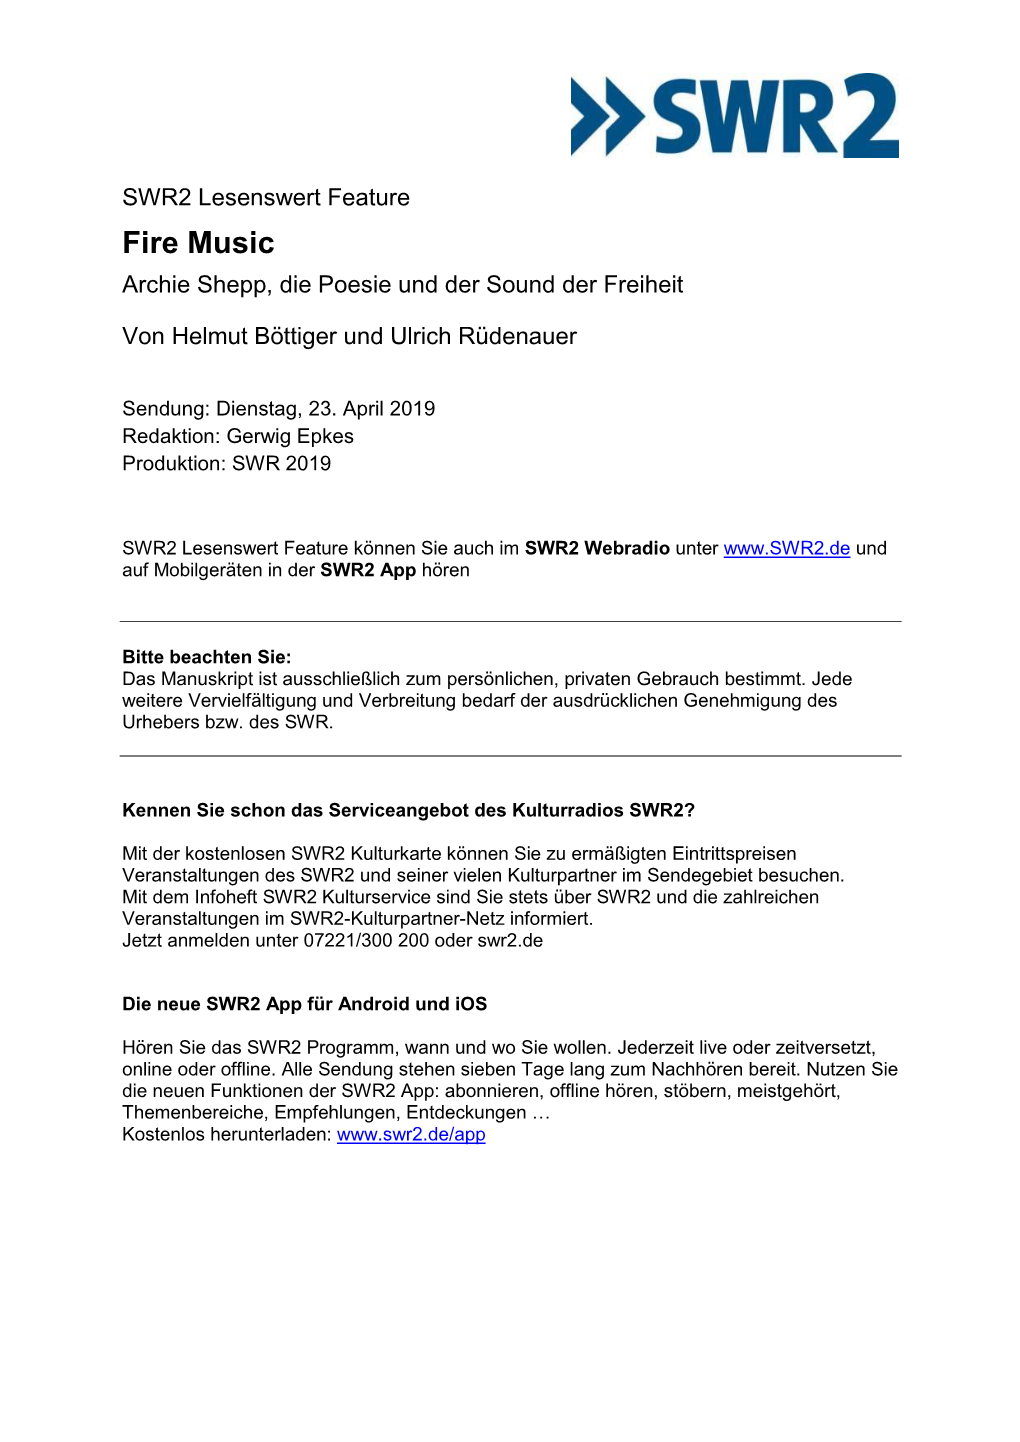 Fire Music Archie Shepp, Die Poesie Und Der Sound Der Freiheit